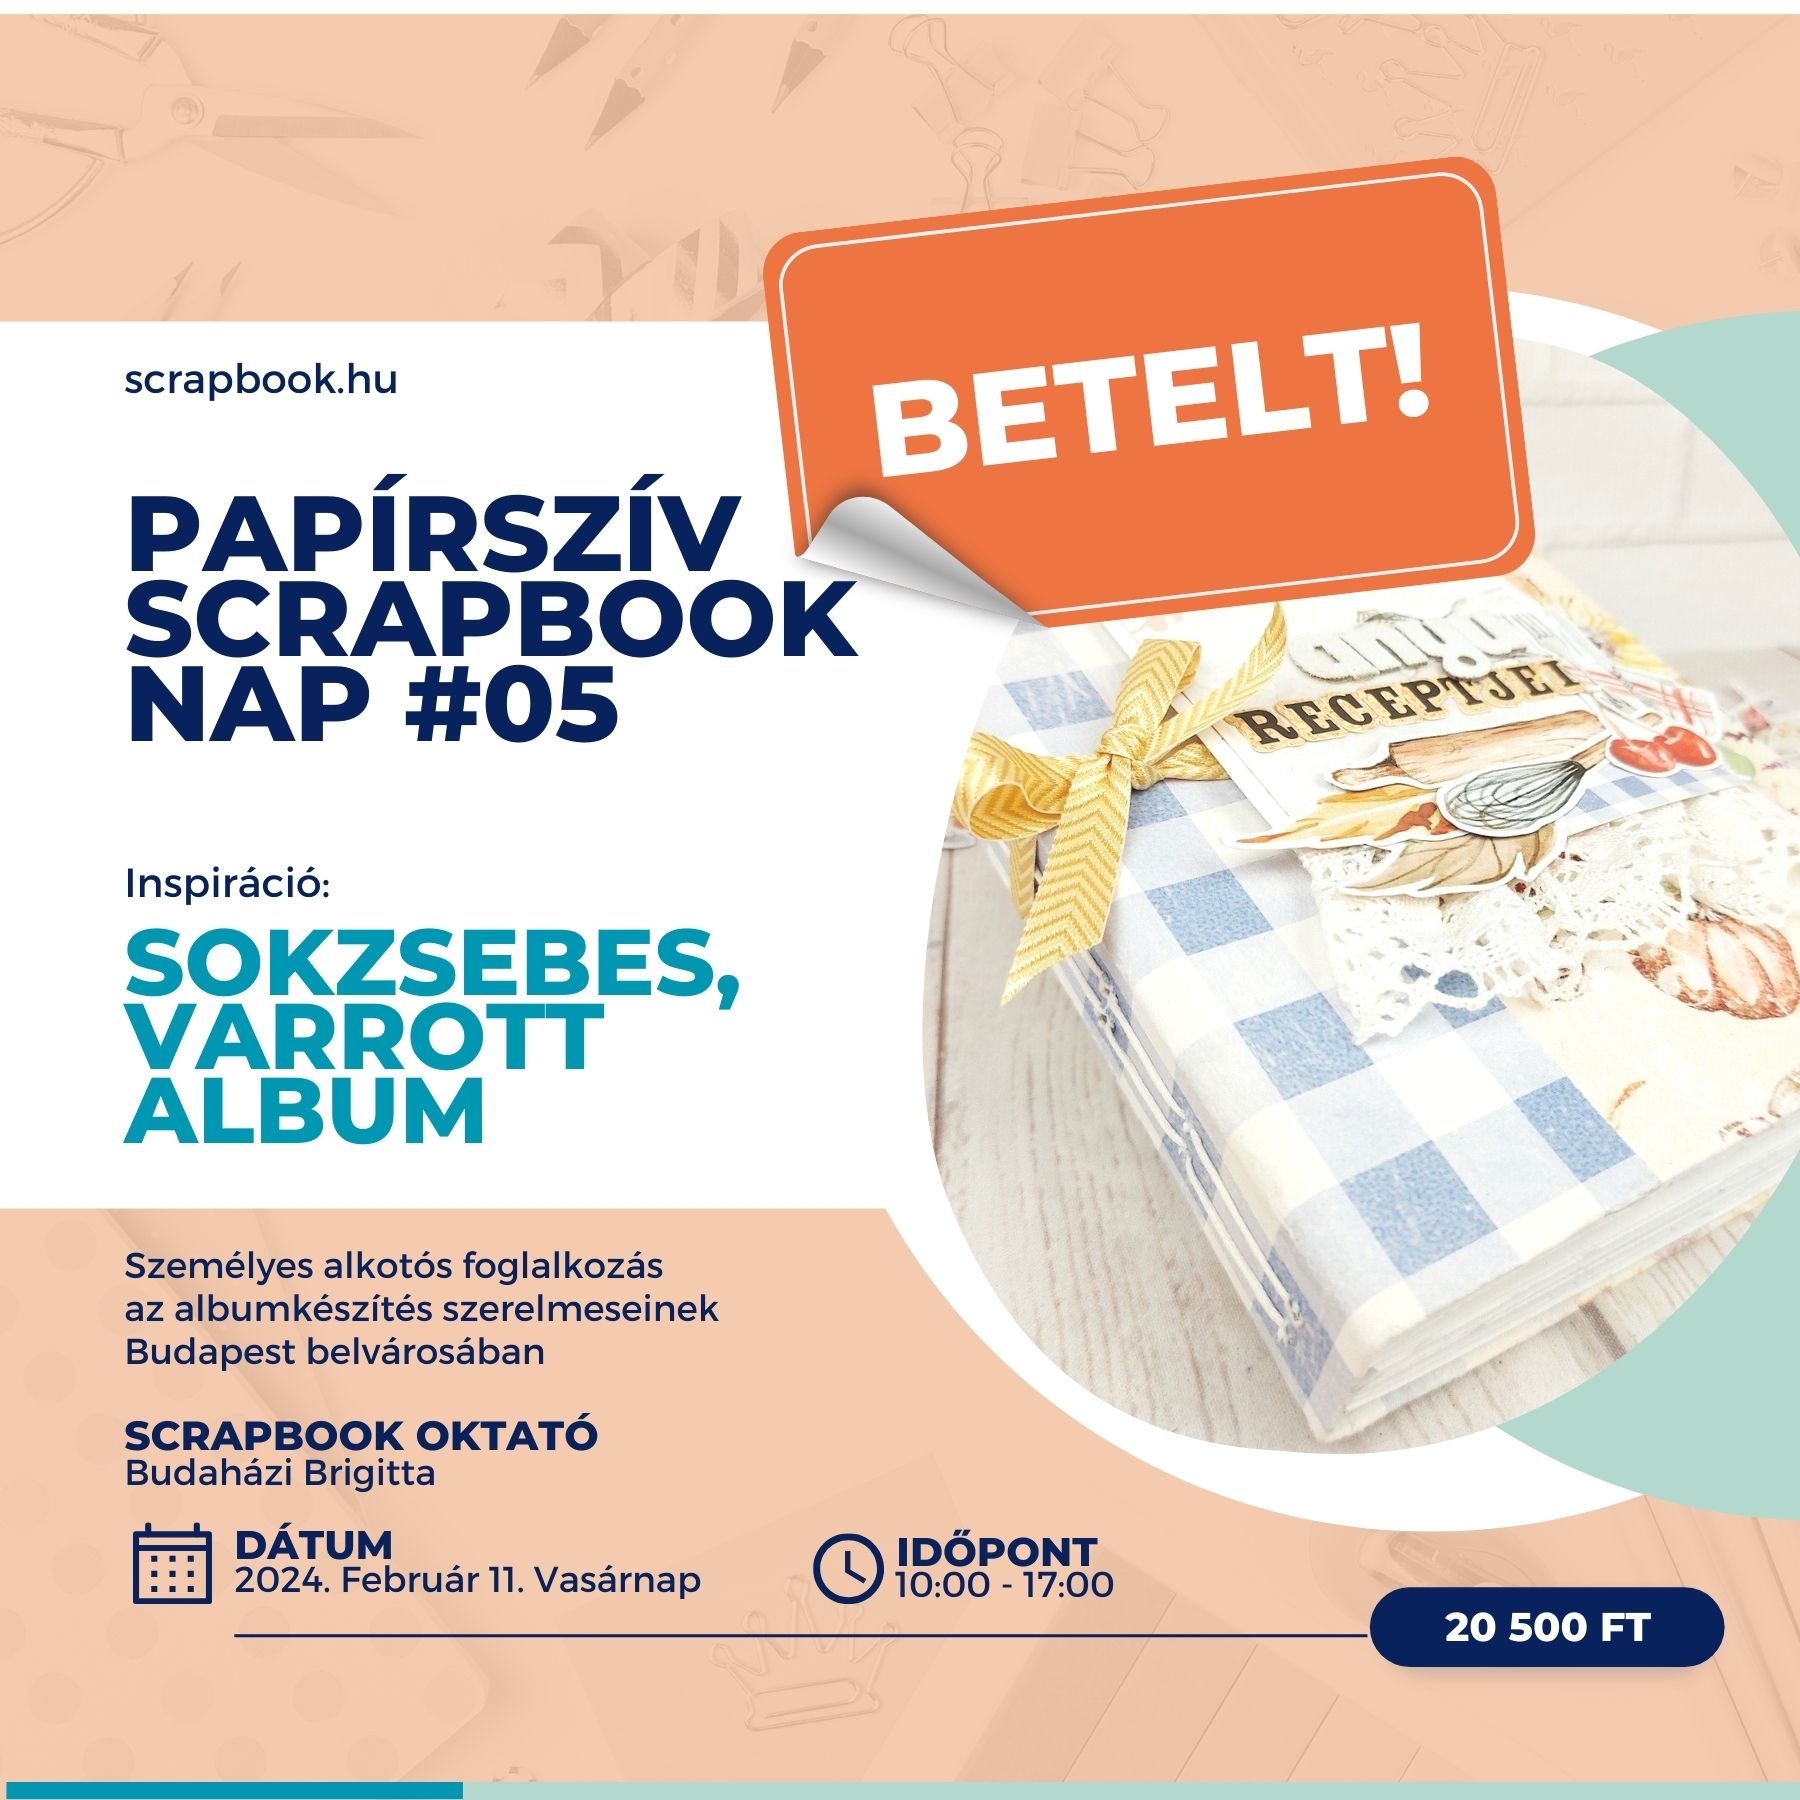 Papírszív Scrapbook nap 02 - Személyes alkotós foglalkozás az albumkészítés szerelmeseinek Budapest belvárosában - 2023. augusztus